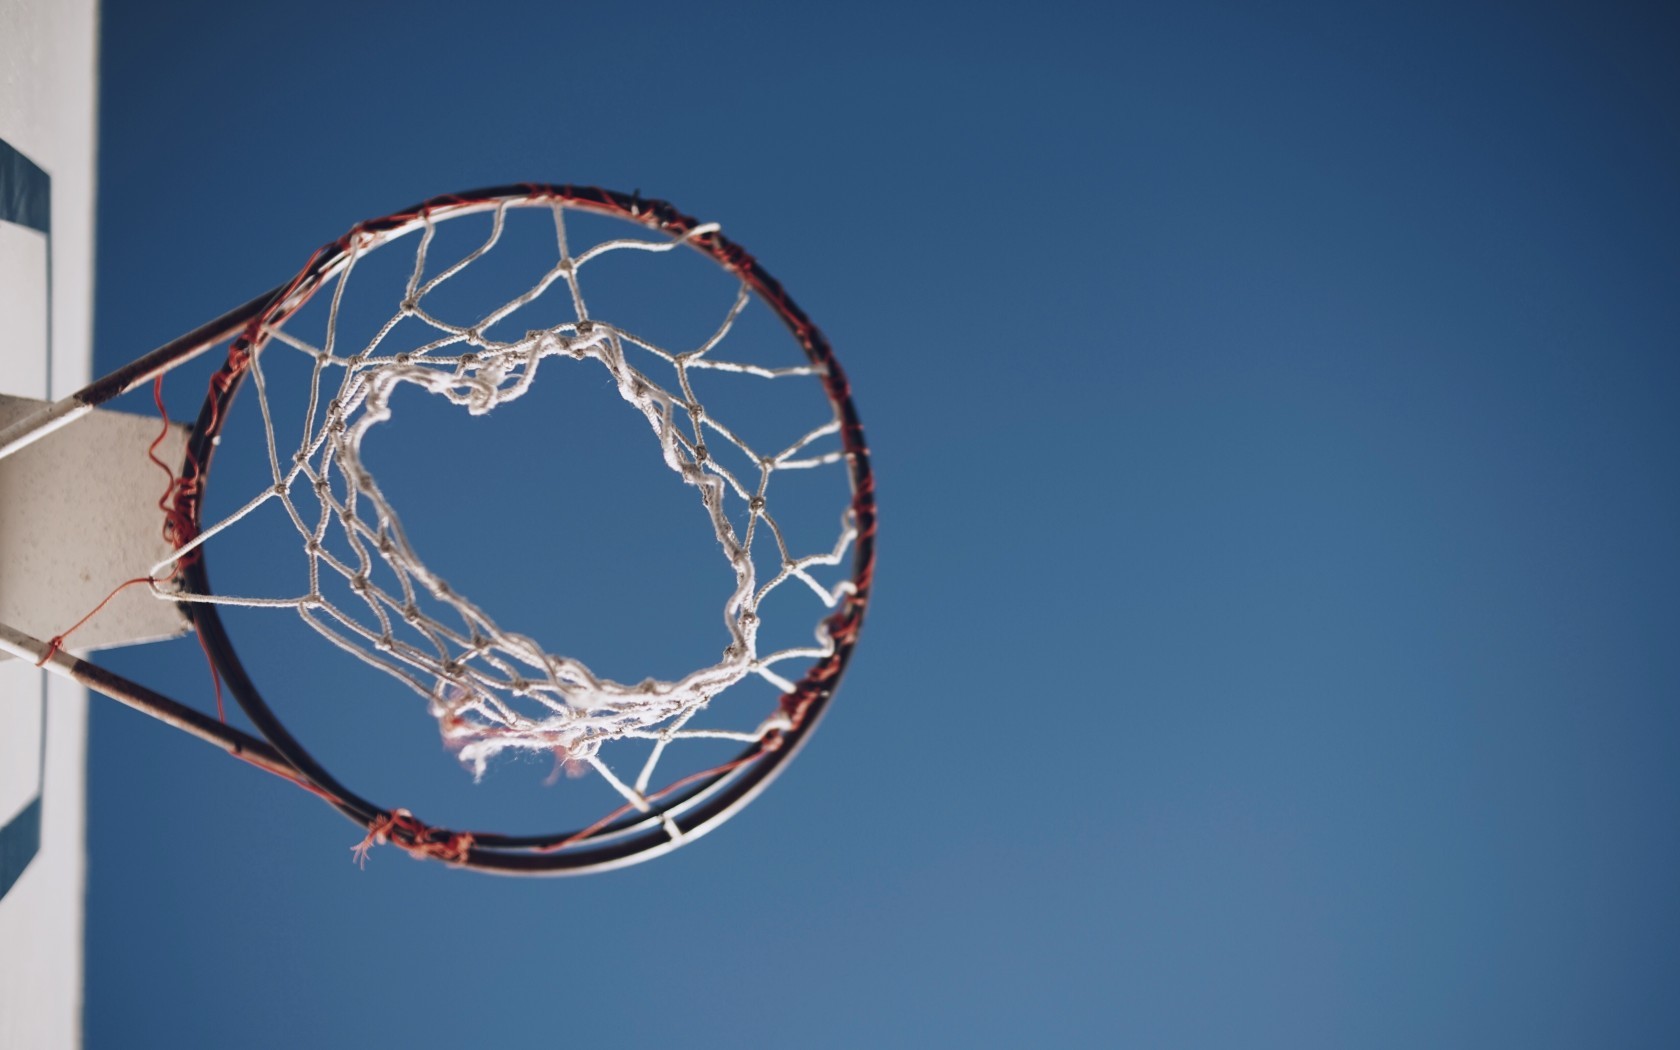 General 1680x1050 basketball hoop blue minimalism